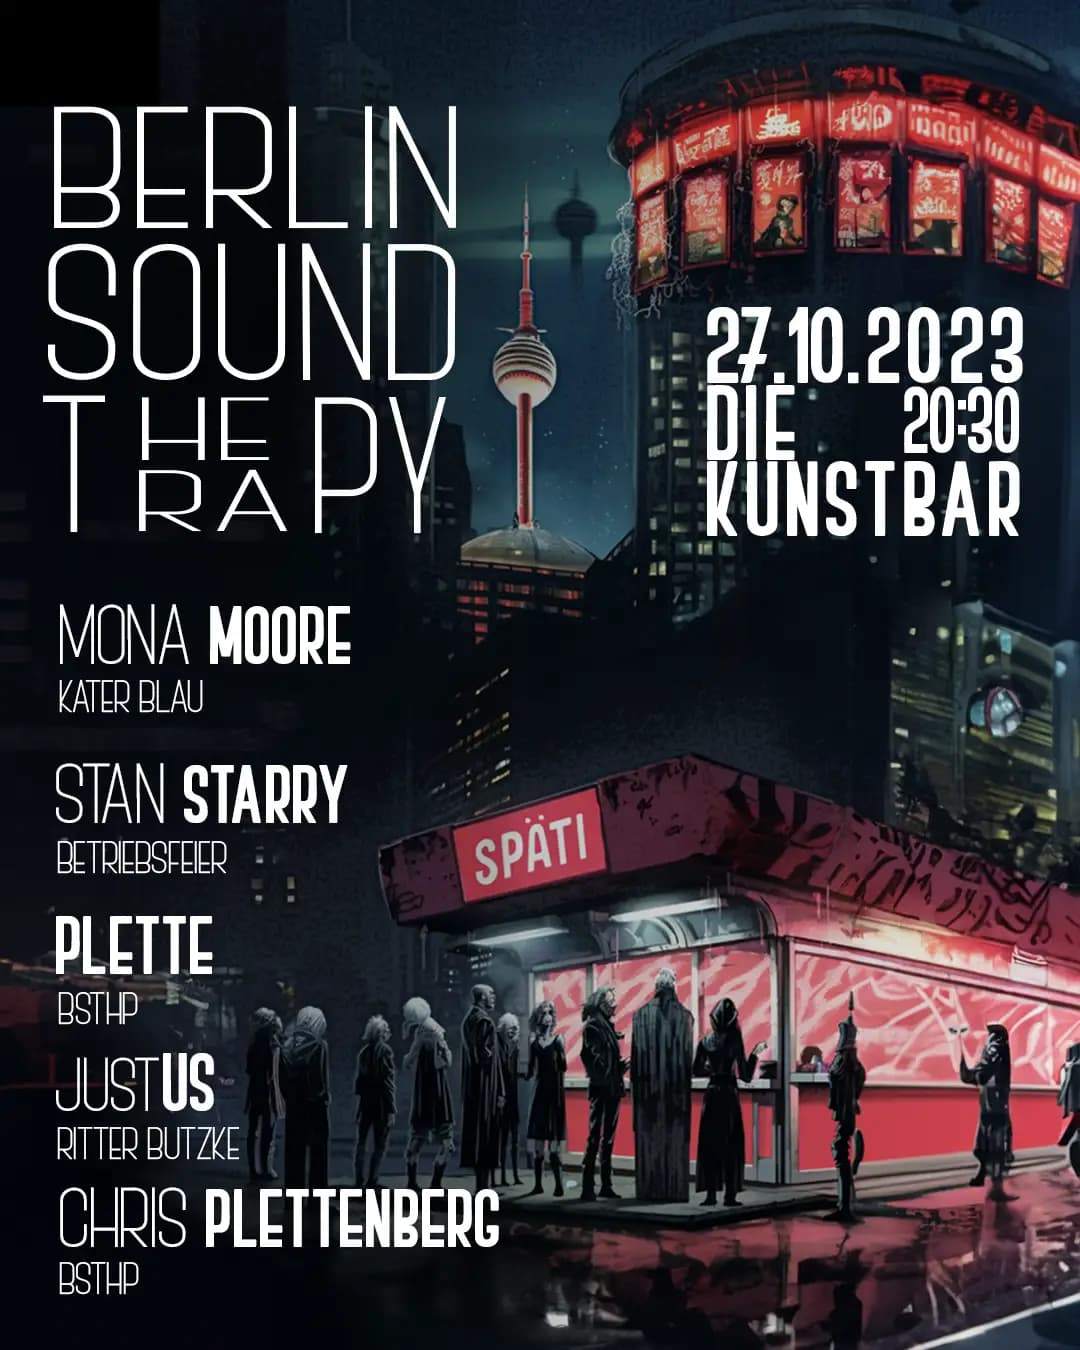 BERLIN SOUND THERAPY // Die Kunstbar - フライヤー表